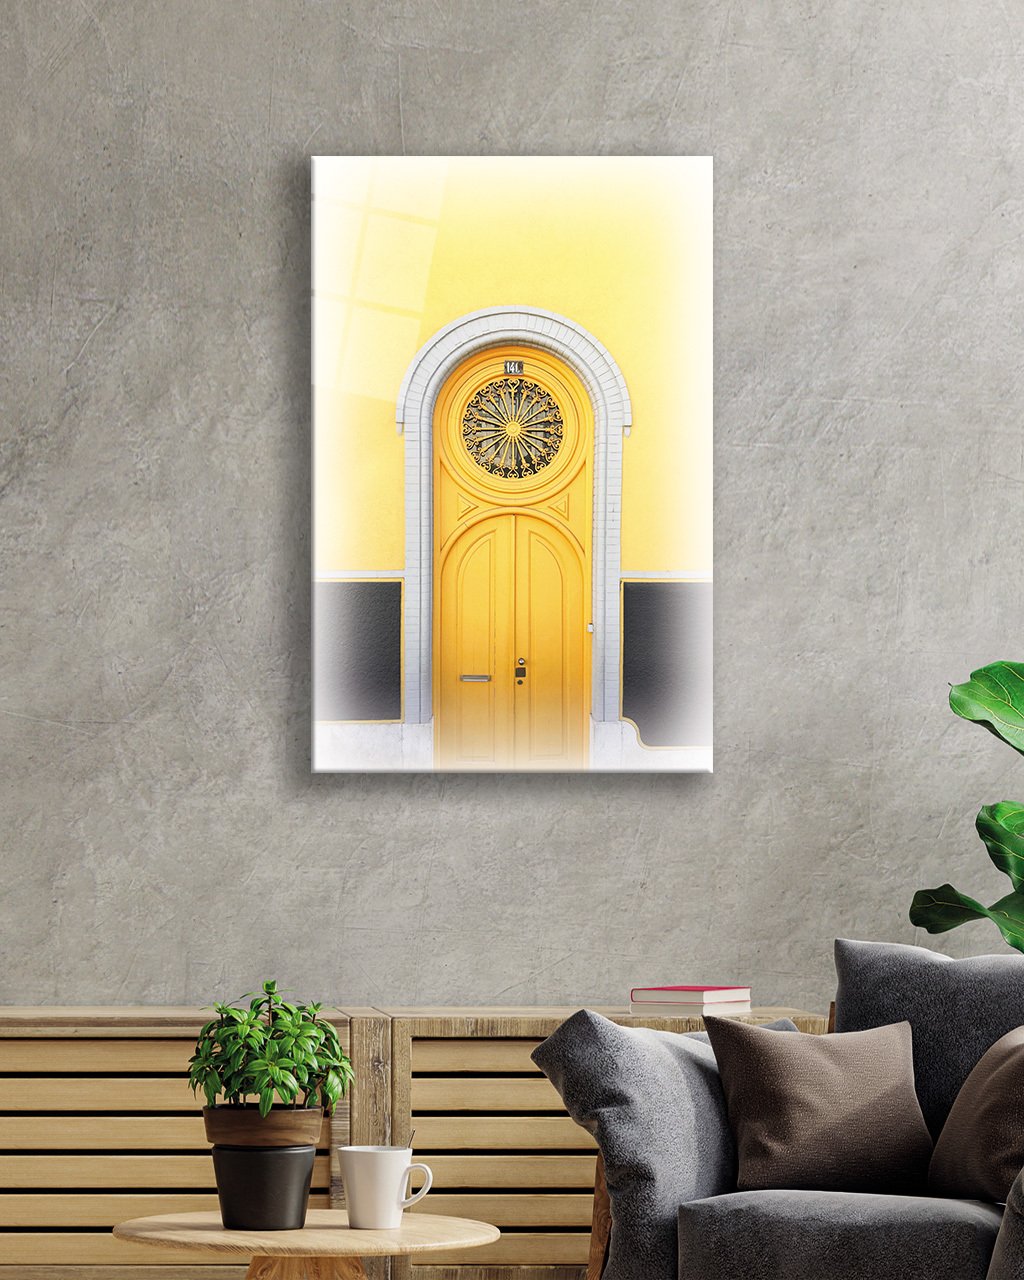 Sarı Eski Kapı Cam Tablo  4mm Dayanıklı Temperli Cam Yellow Old Door Glass Table 4mm Durable Tempered Glass